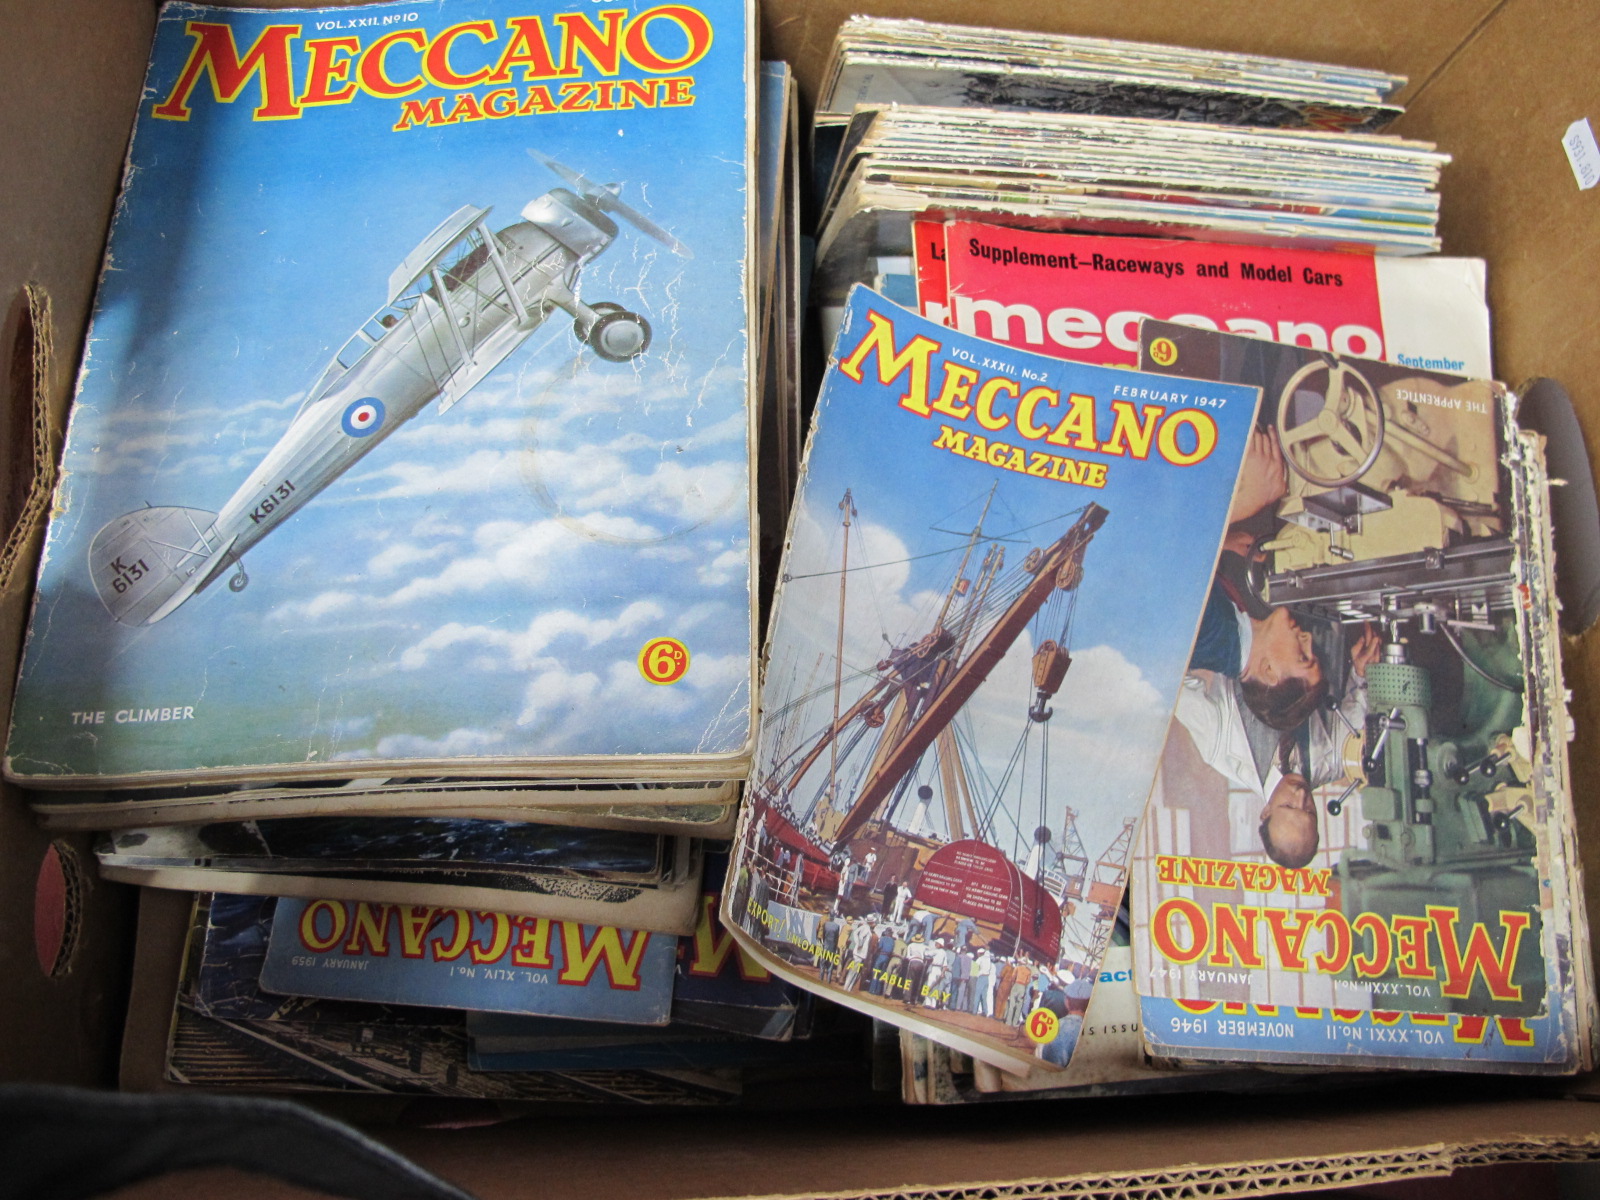 A Box of Meccano Magazines.